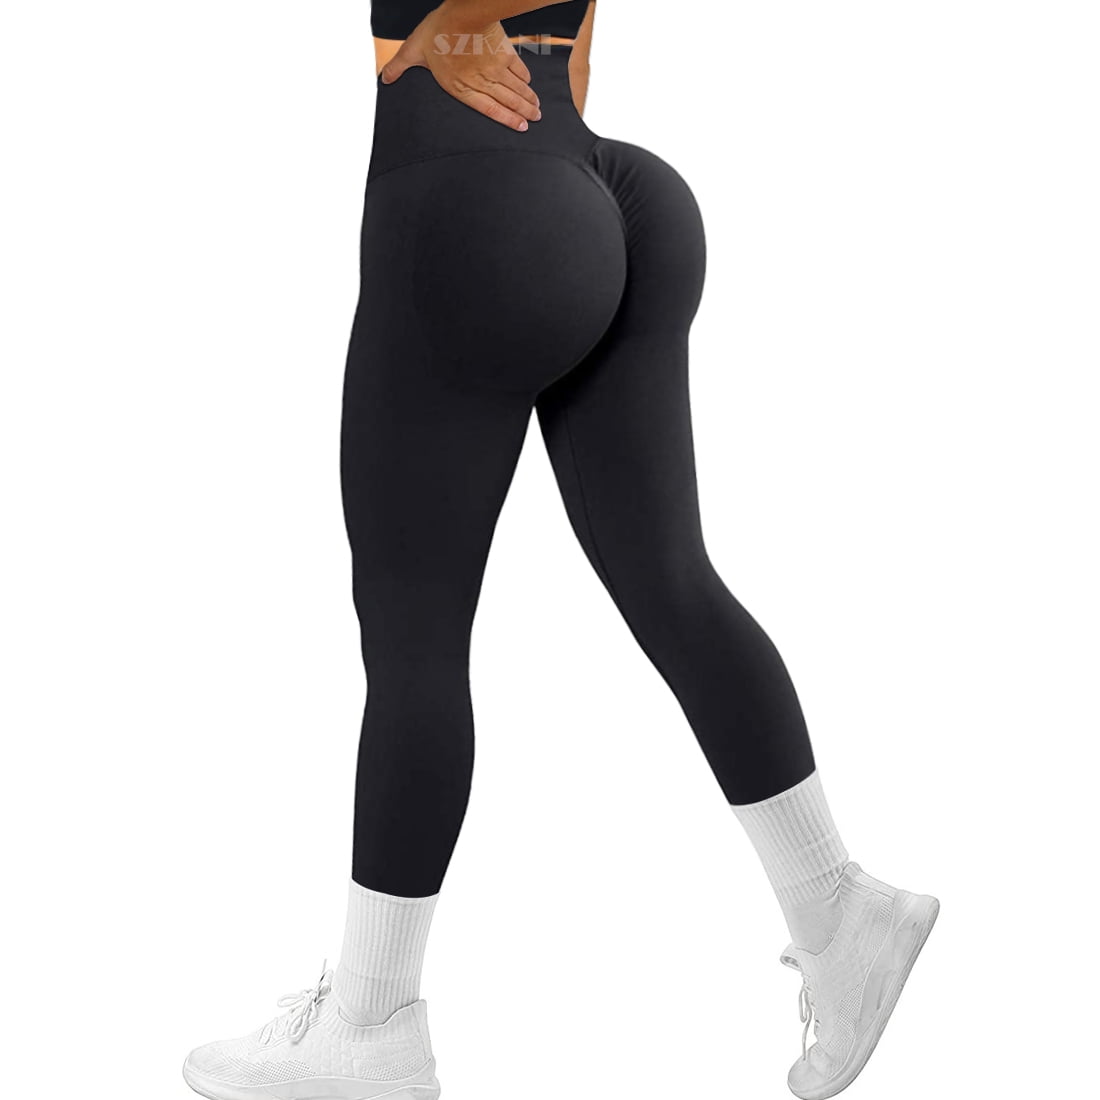 phat booty in leggings